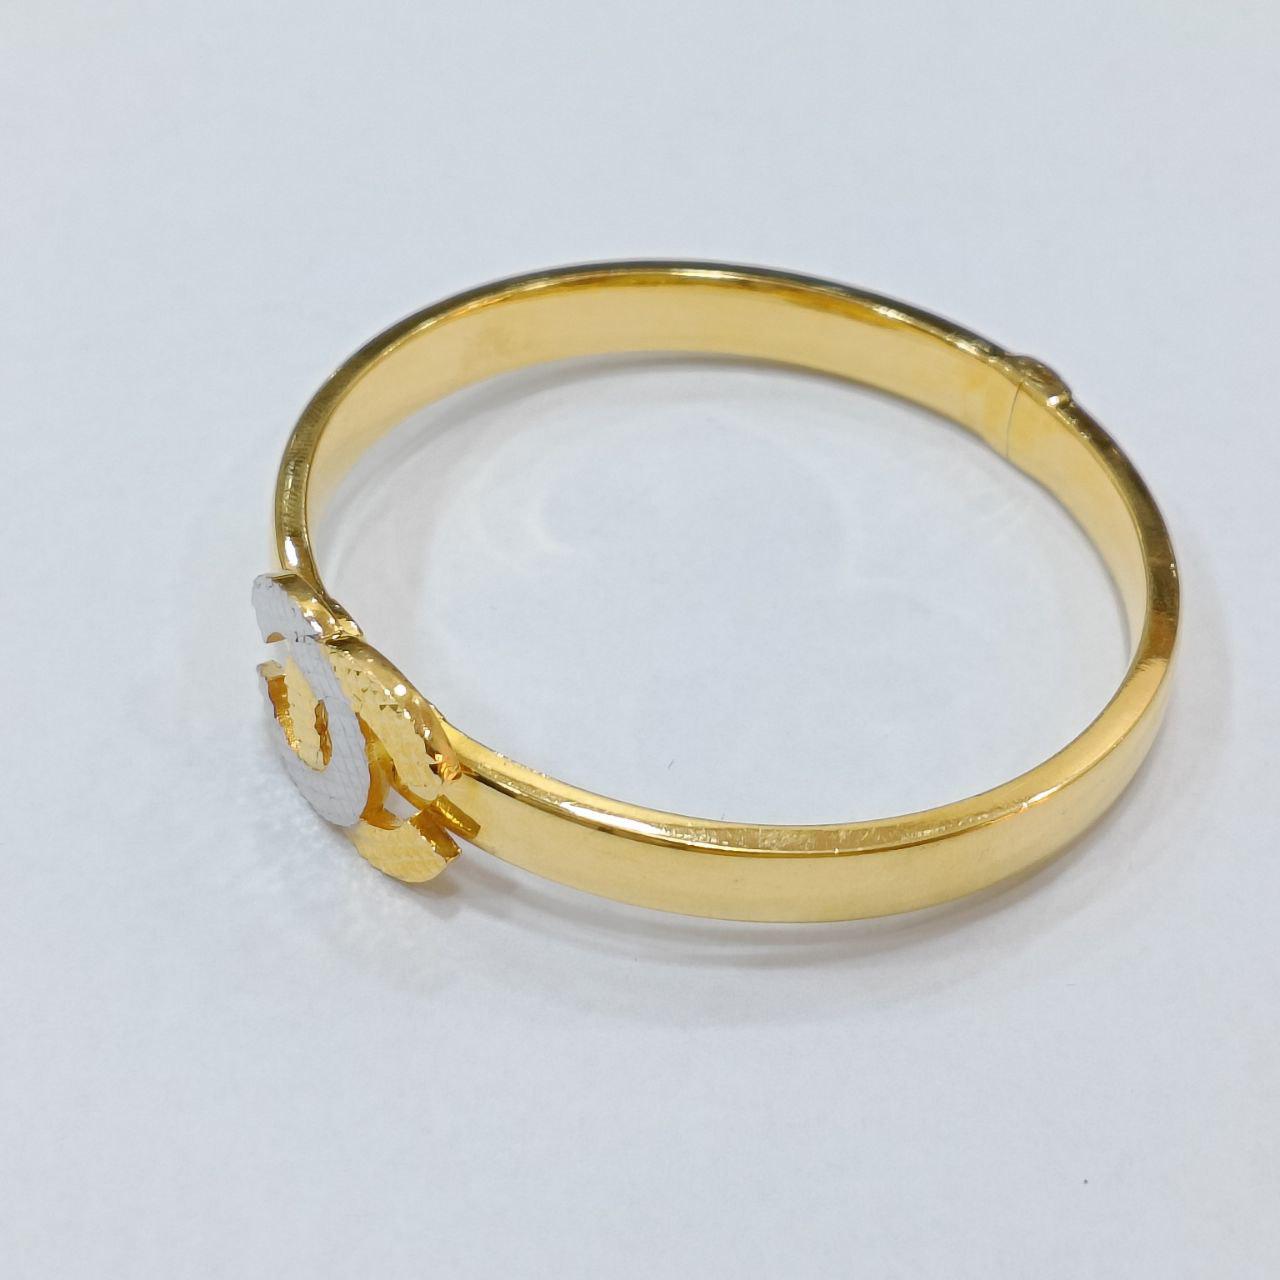 22k / 916 Gold CC Design Bangle-916 gold-Best Gold Shop